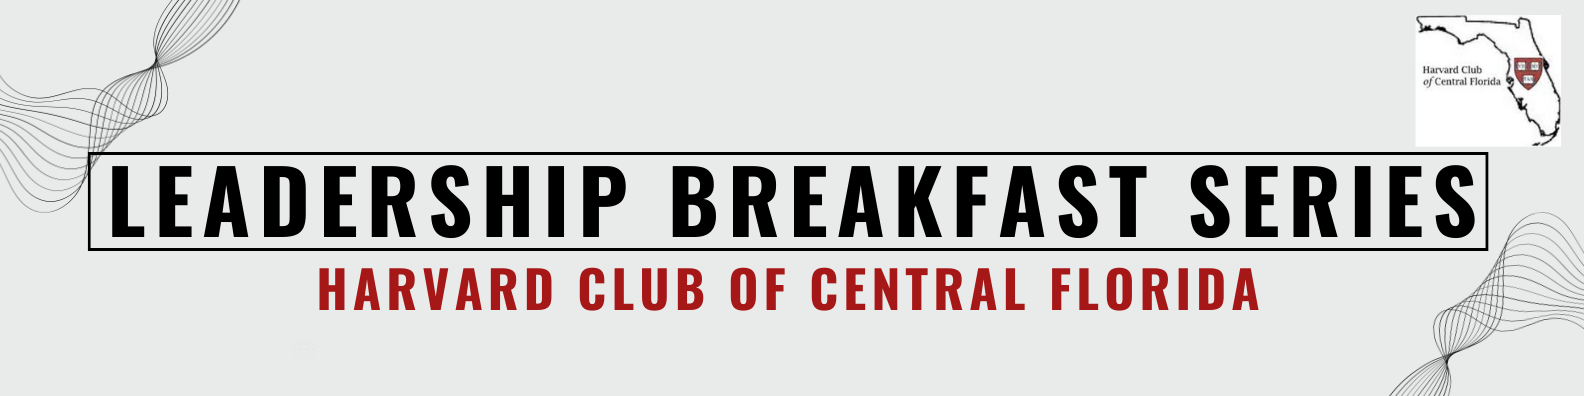 hccf-banner-leadership-breakfast-series